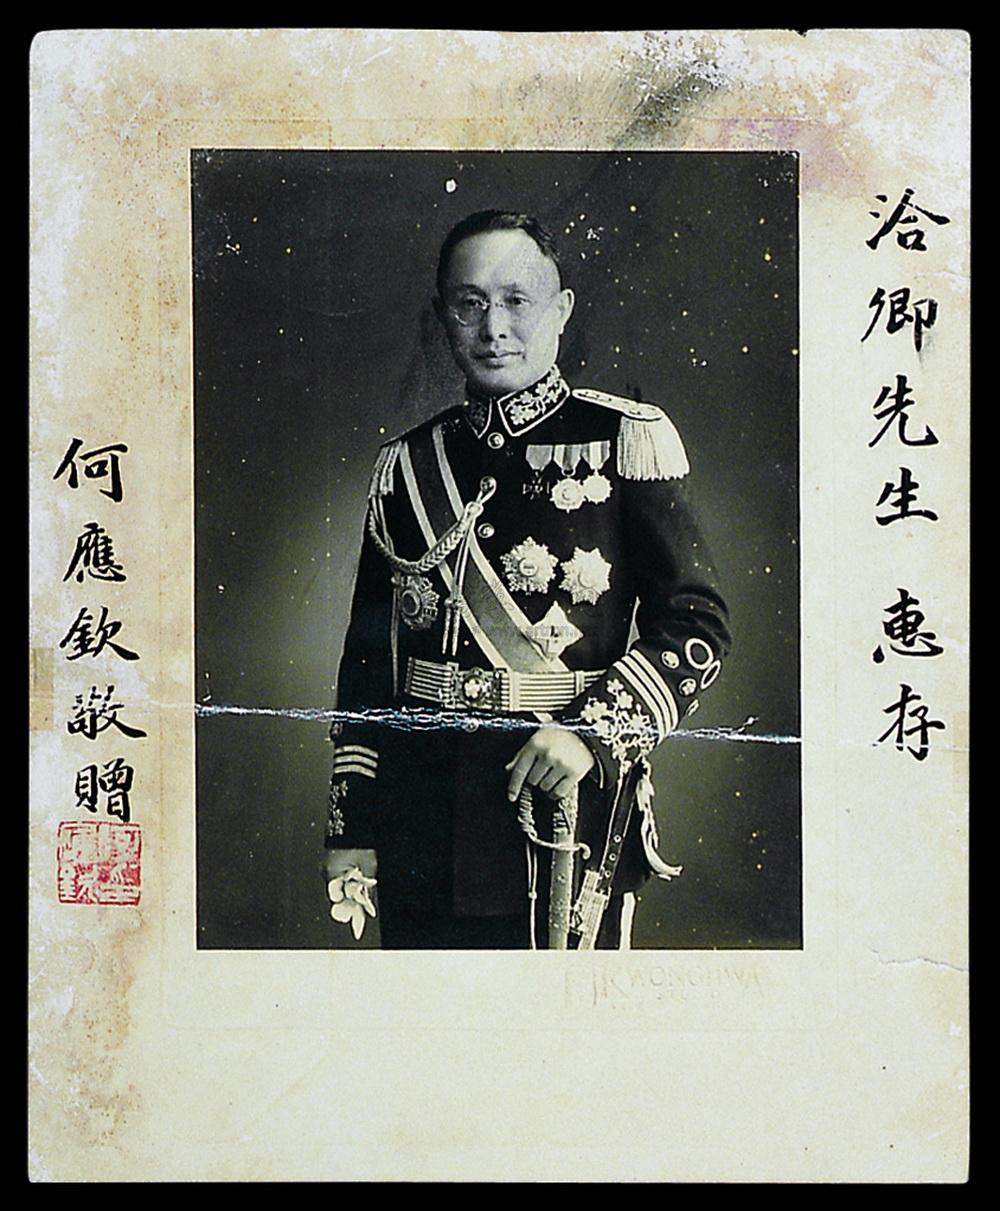 3333 中国陆军司令部总司令何应钦戎装照片一张